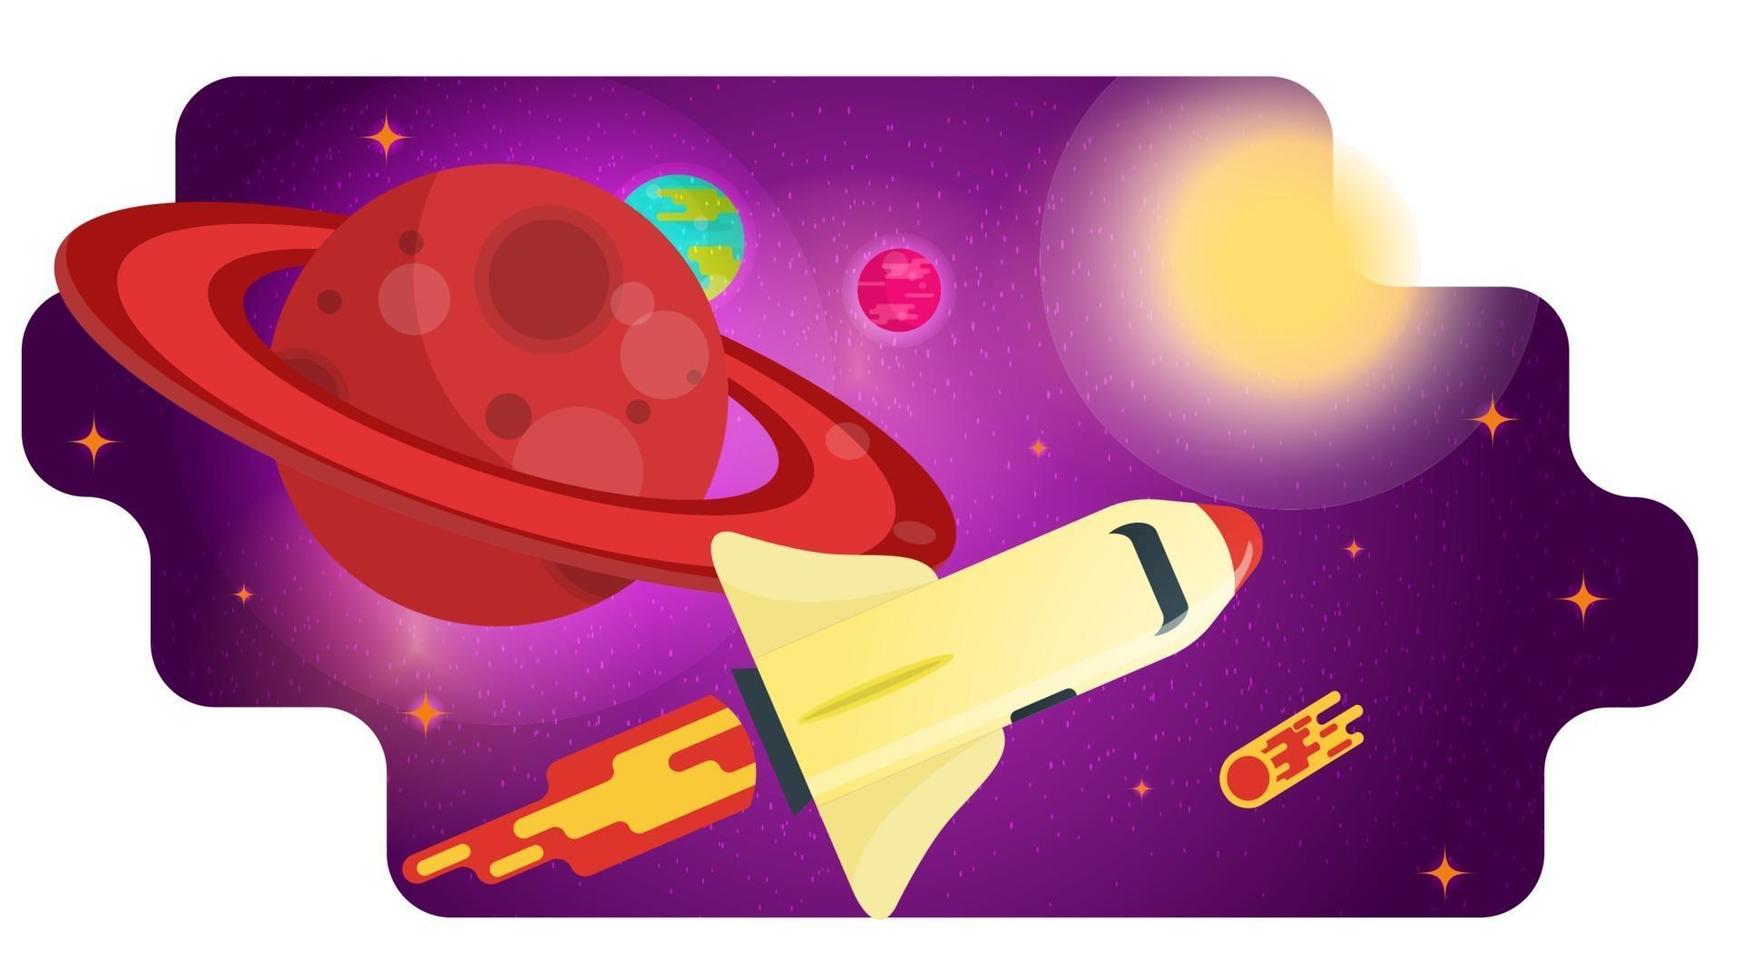 foguete do ônibus espacial passa por um grande planeta vermelho com ilustração em vetor plana conceito de design de anéis